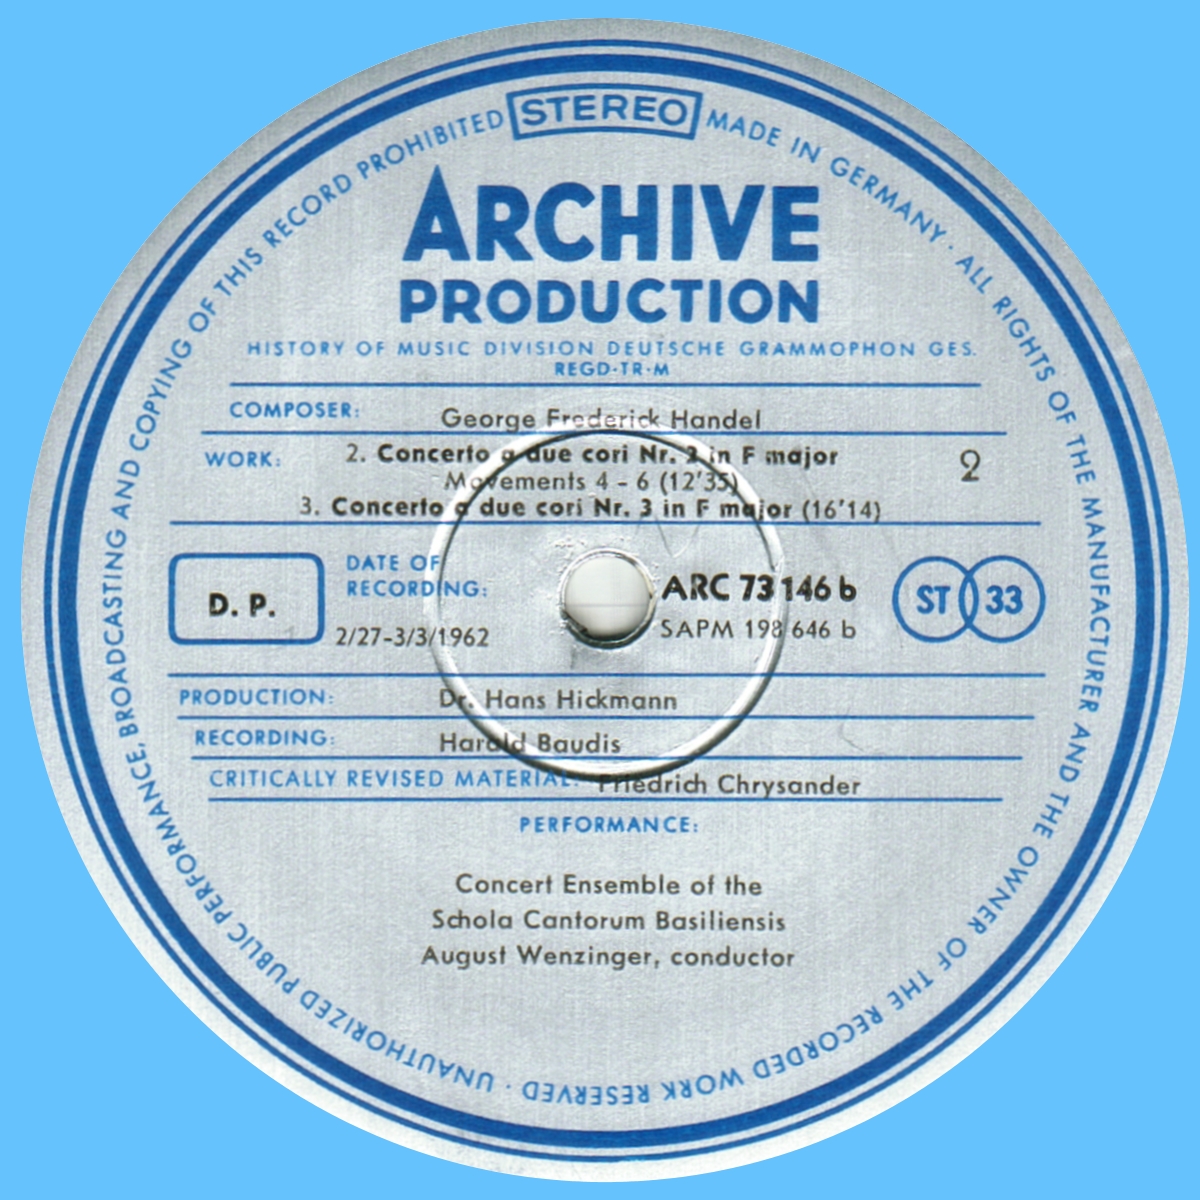 Étiquette verso disque Deutsche Grammophon Archive Production ARC 73146 198646 SAPM